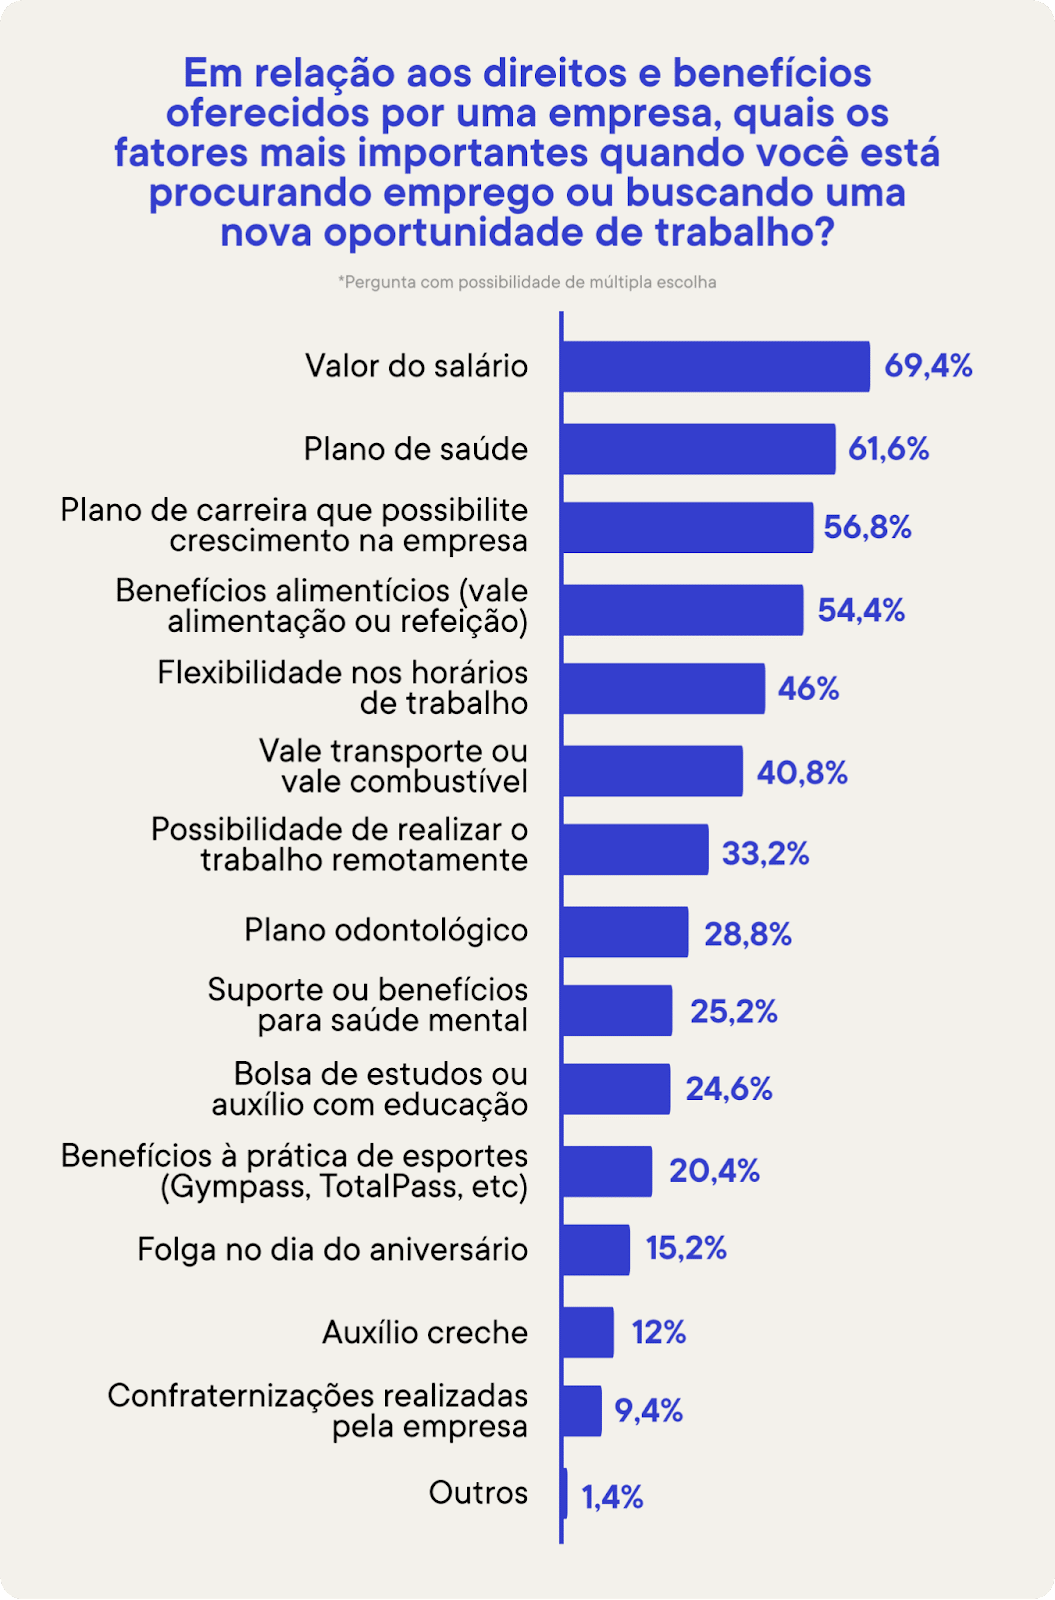 psicologiasdobrasil.com.br - 56% dos brasileiros não pretende ficar em trabalhos pouco saudáveis